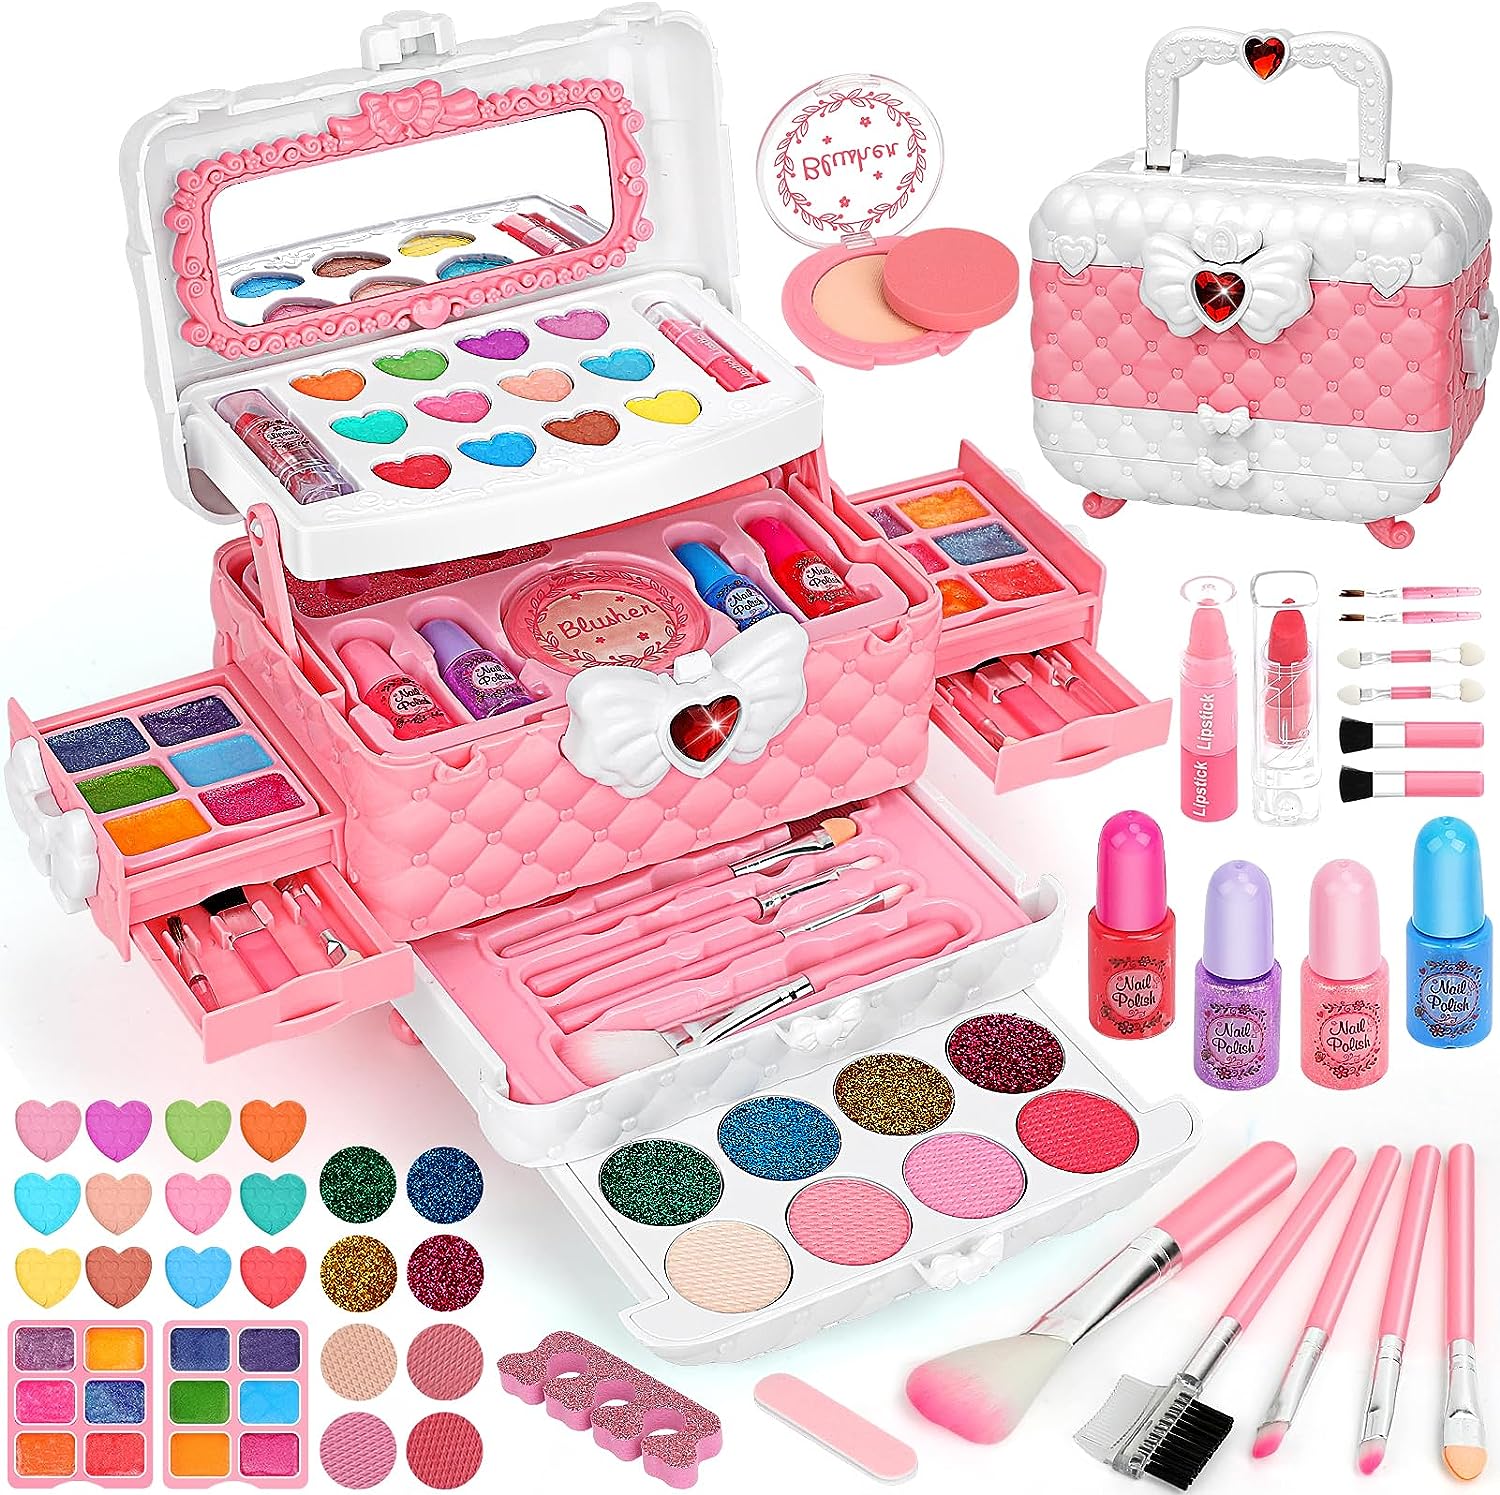  Toys for Girls-Kids Makeup Kit for Girl,29PCS Real